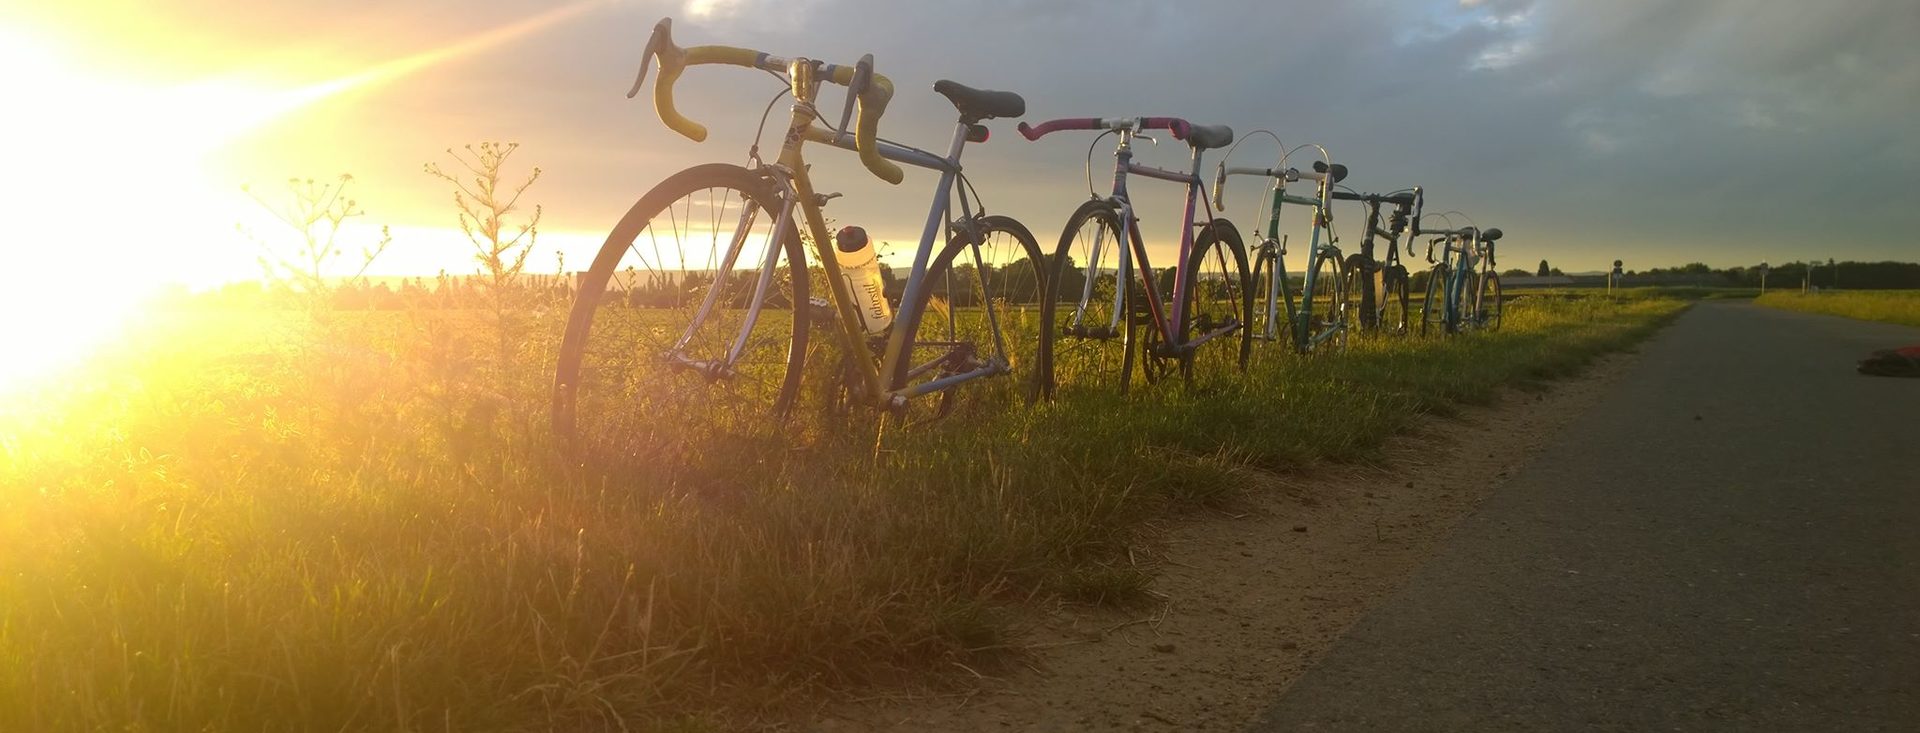 Radfahren in Wiesbaden - Räder im Sonnenuntergang